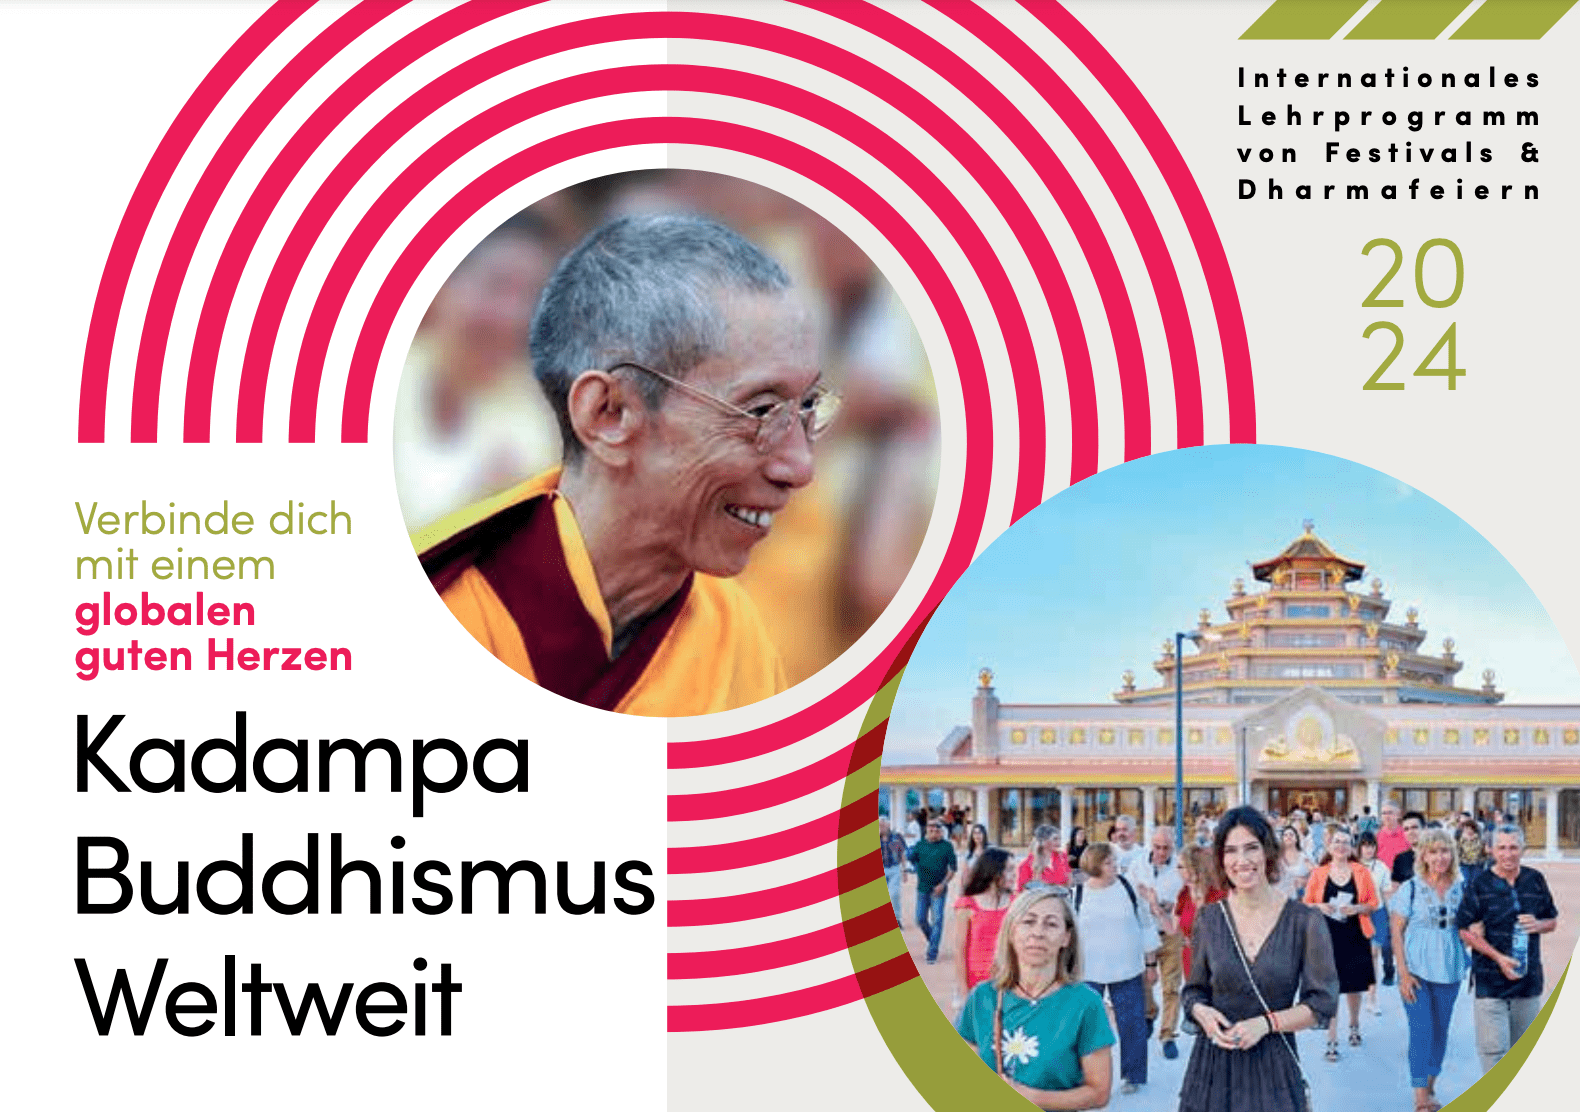 Kadampa Buddhismus Weltweit